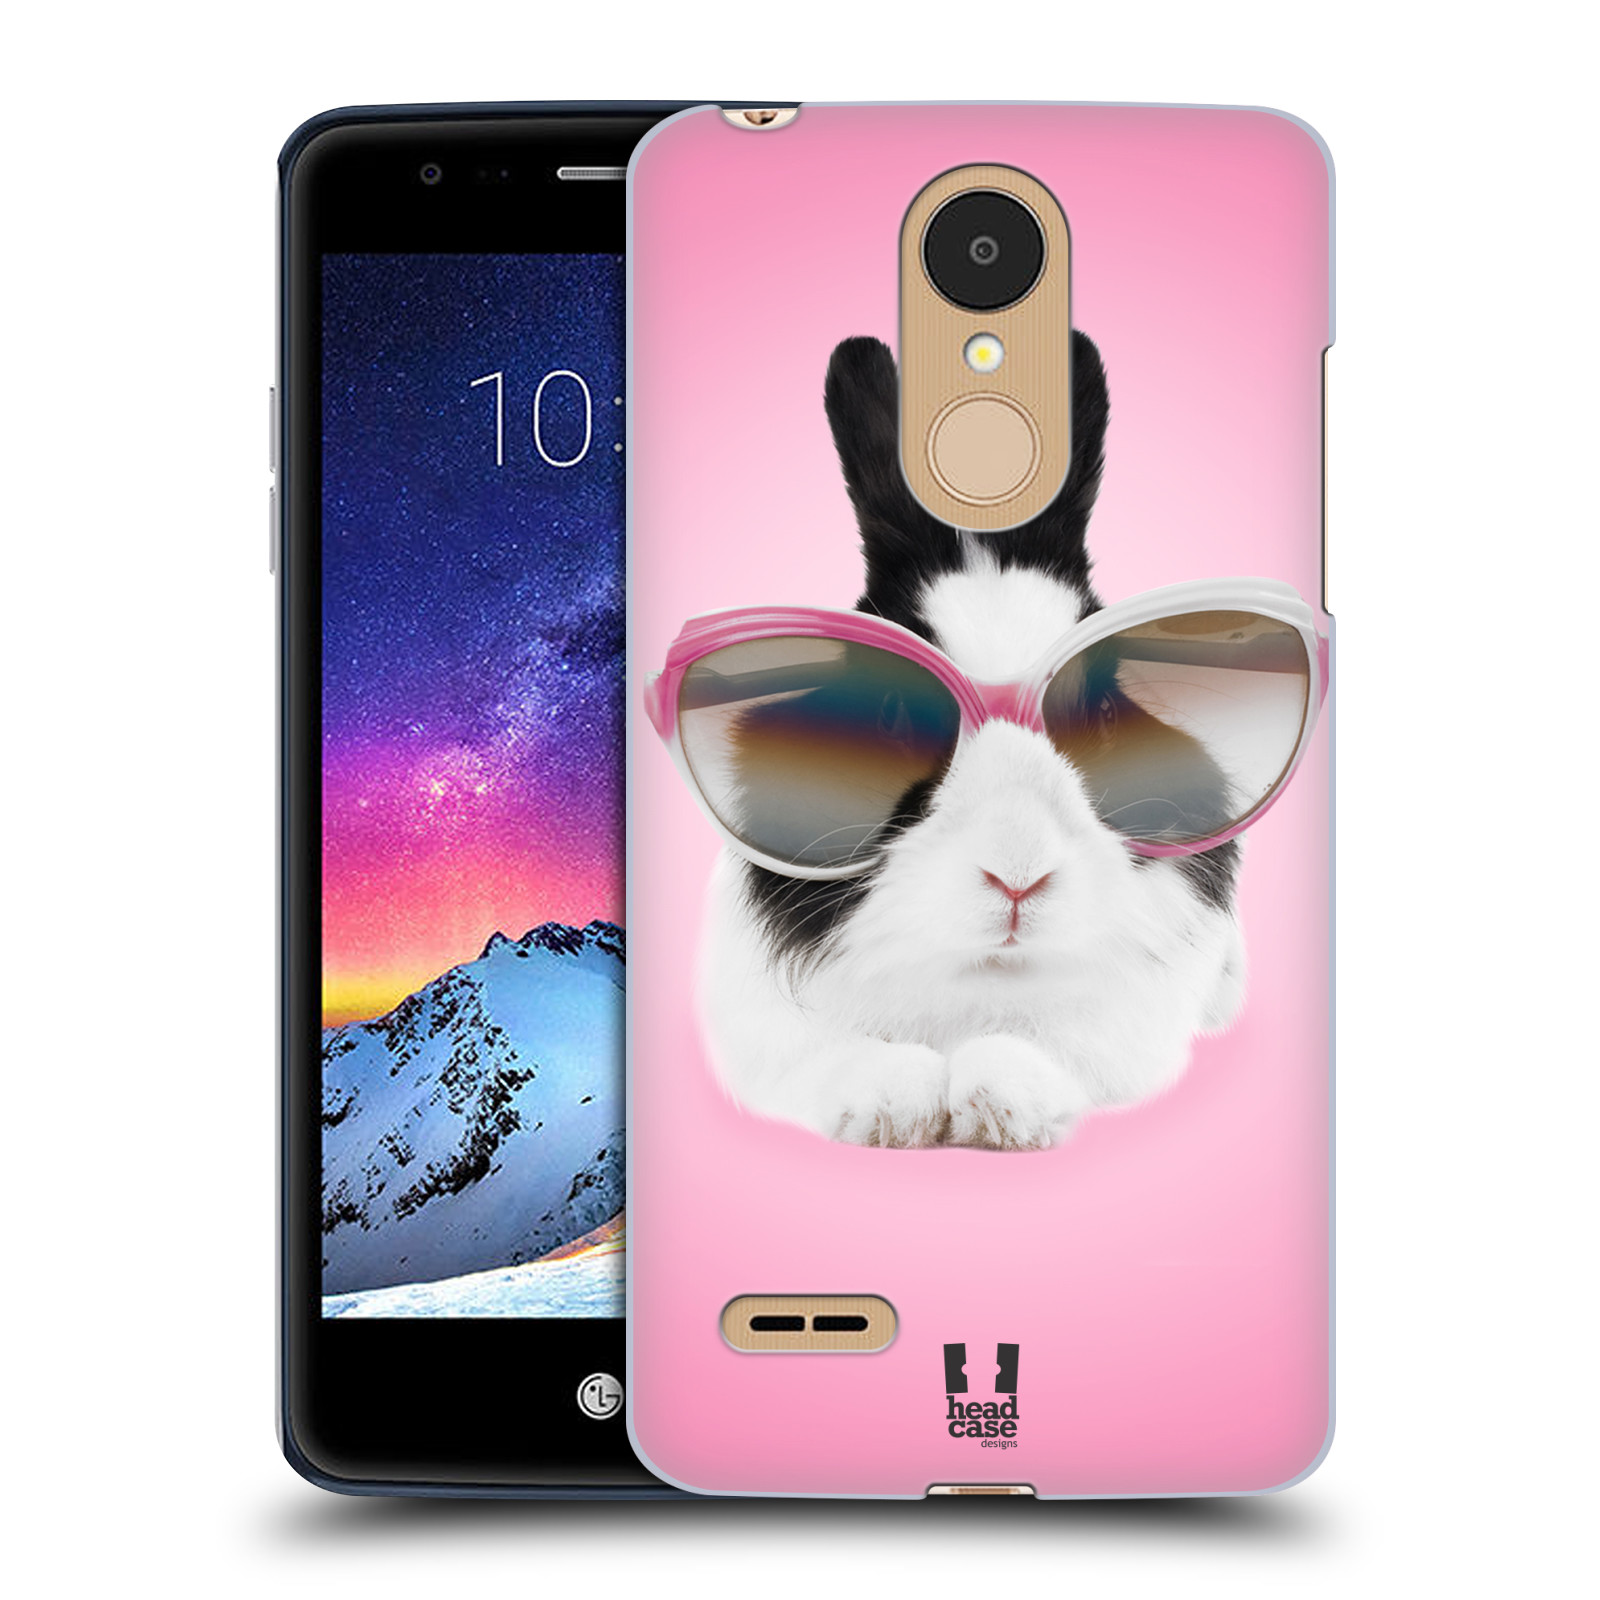 HEAD CASE plastový obal na mobil LG K9 / K8 2018 vzor Legrační zvířátka roztomilý králíček s brýlemi růžová